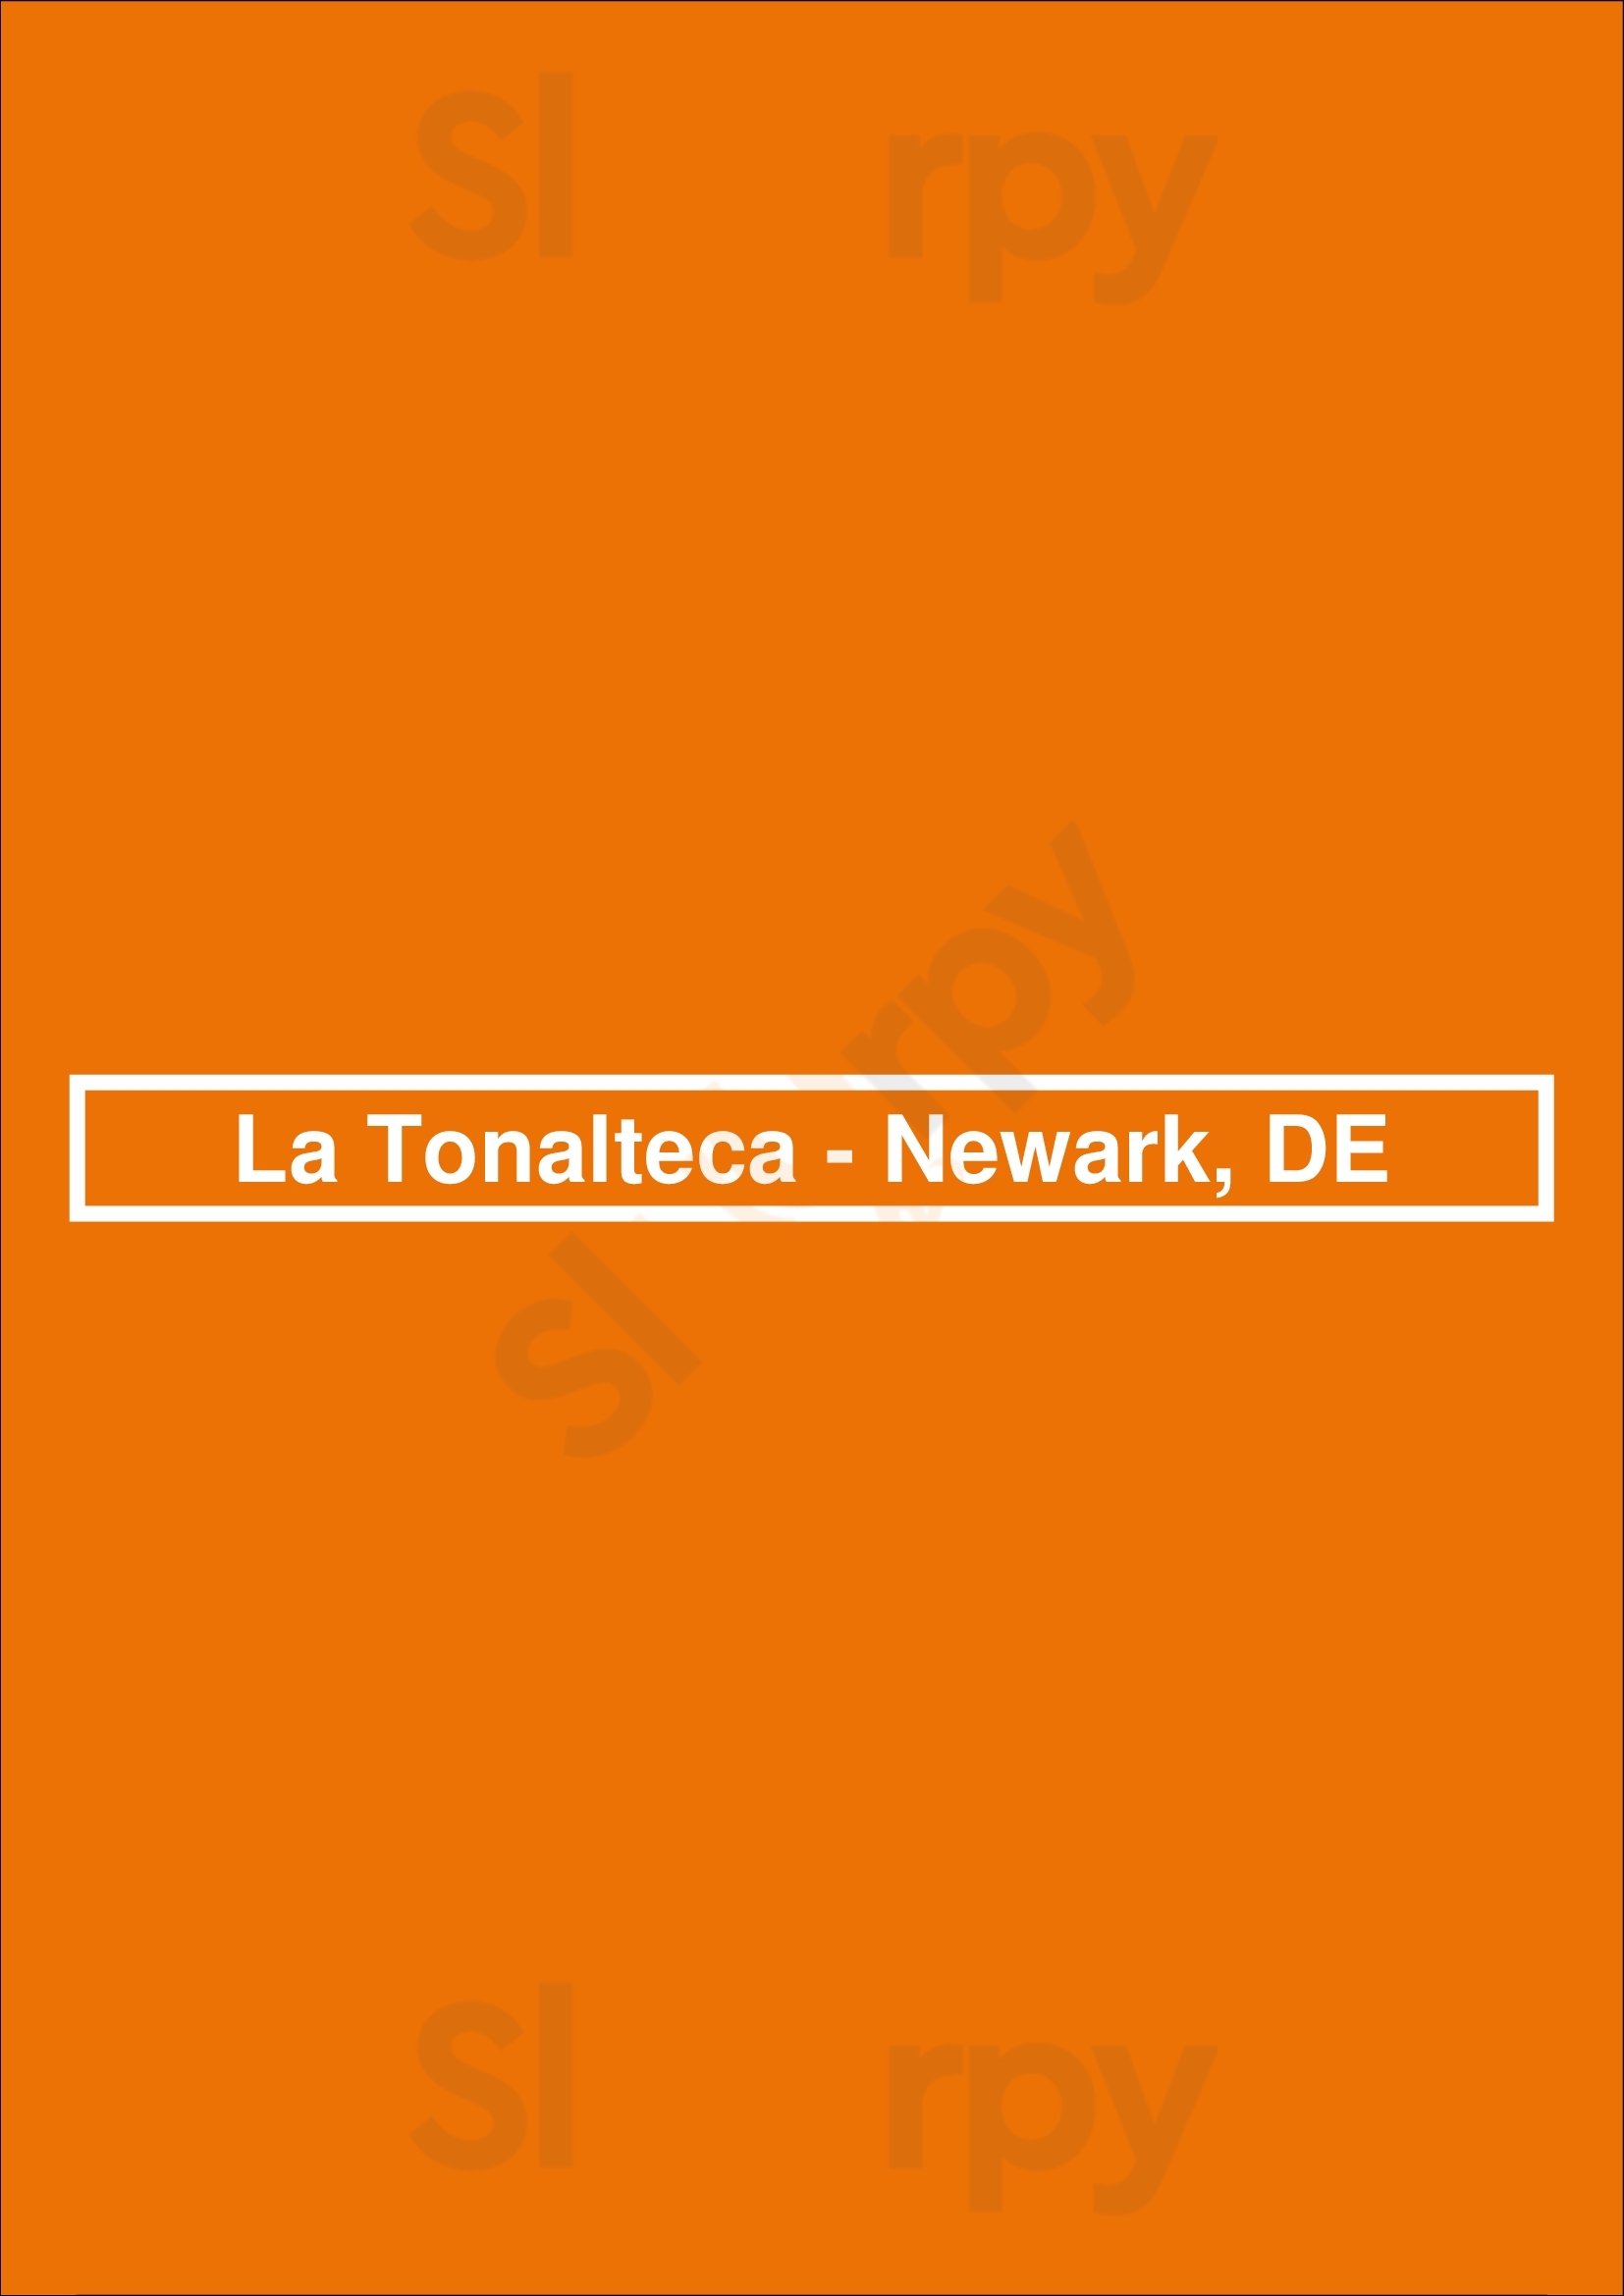 La Tonalteca - Newark, De Newark Menu - 1